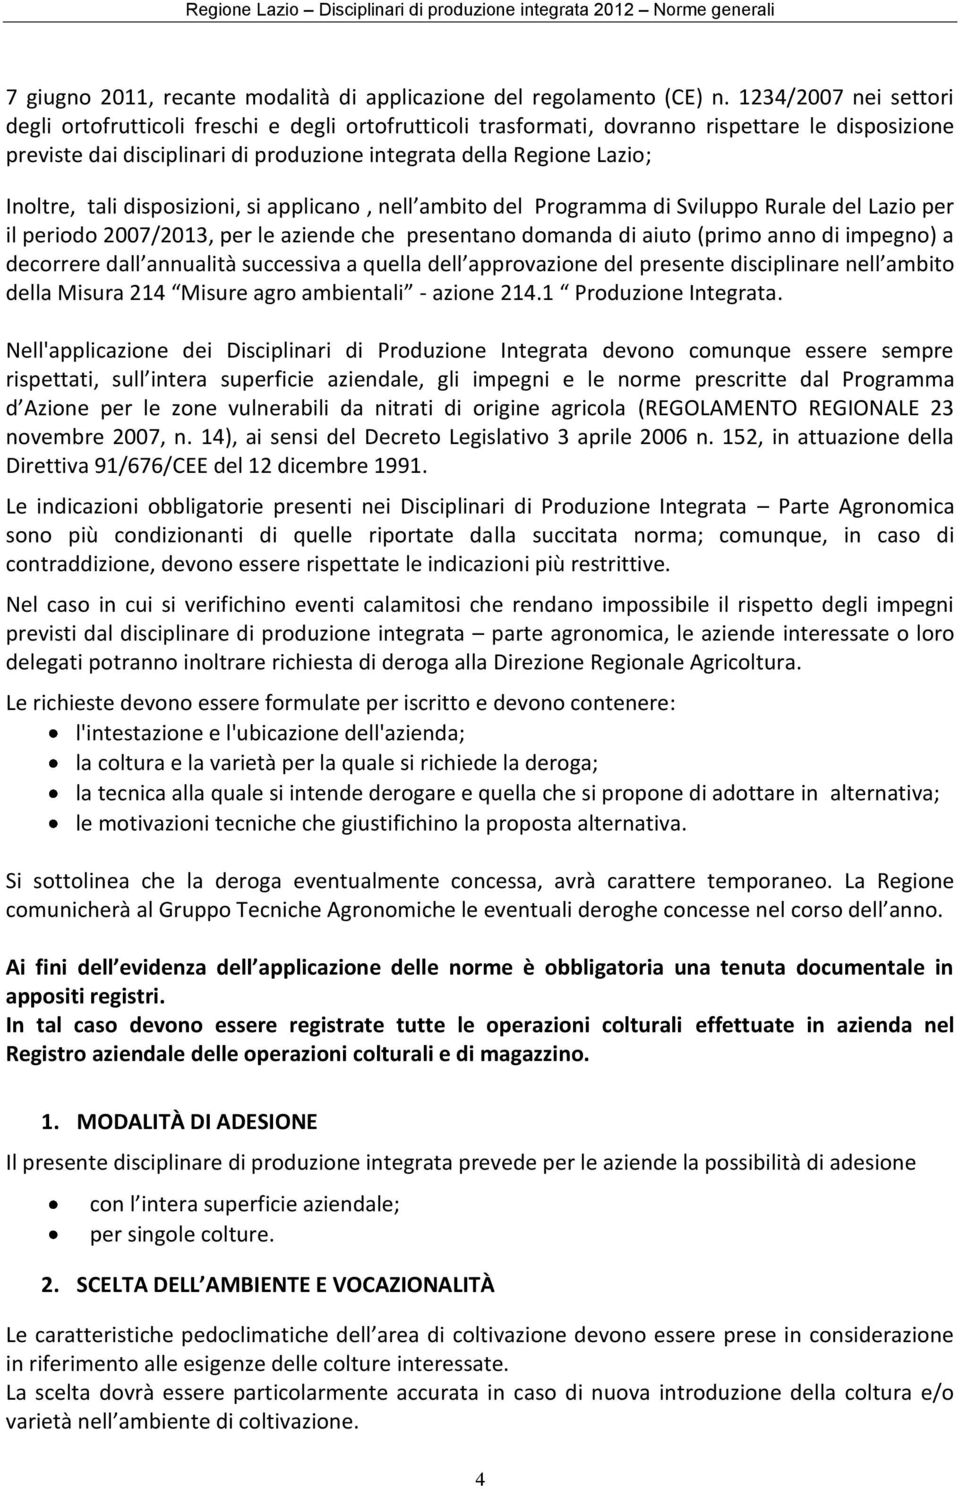 Inoltre, tali disposizioni, si applicano, nell ambito del Programma di Sviluppo Rurale del Lazio per il periodo 2007/2013, per le aziende che presentano domanda di aiuto (primo anno di impegno) a